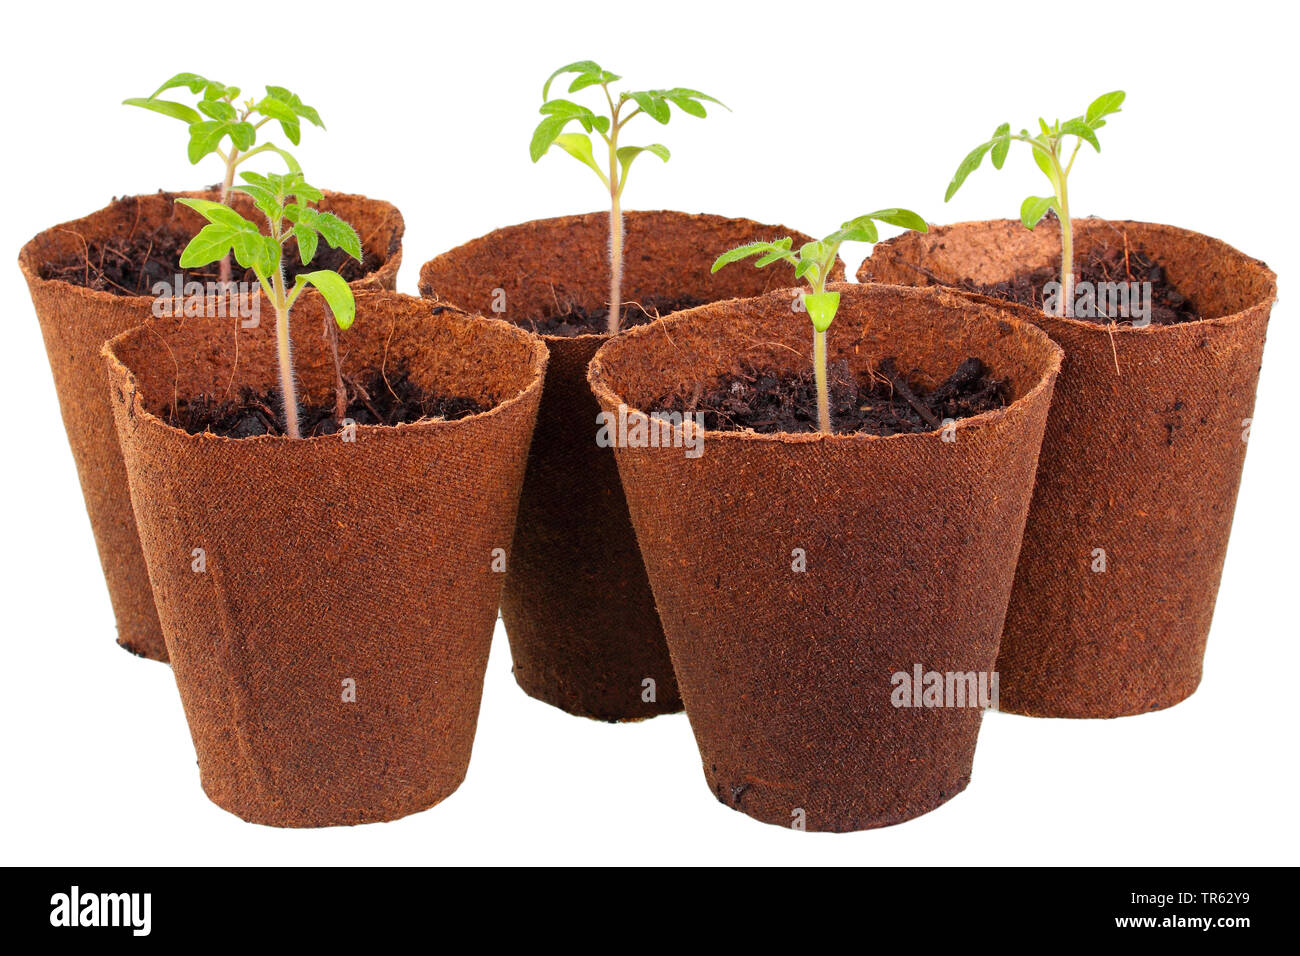 Les jeunes plants de tomates en pots en carton, Allemagne Banque D'Images